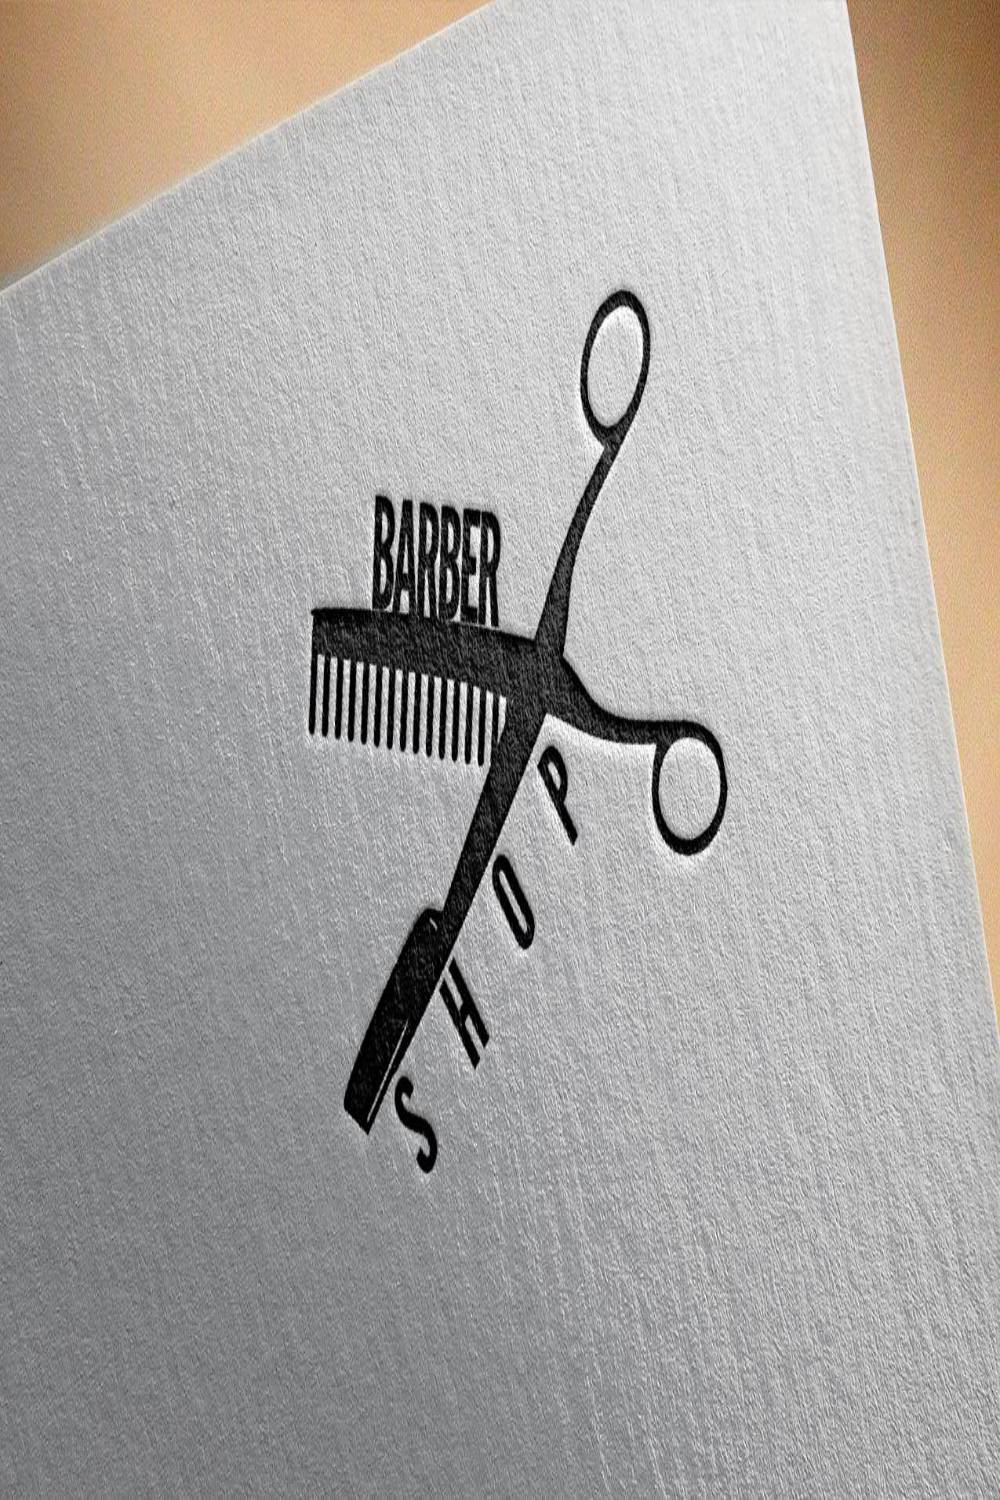 Barber Shop Logo Design Template pinterest image.